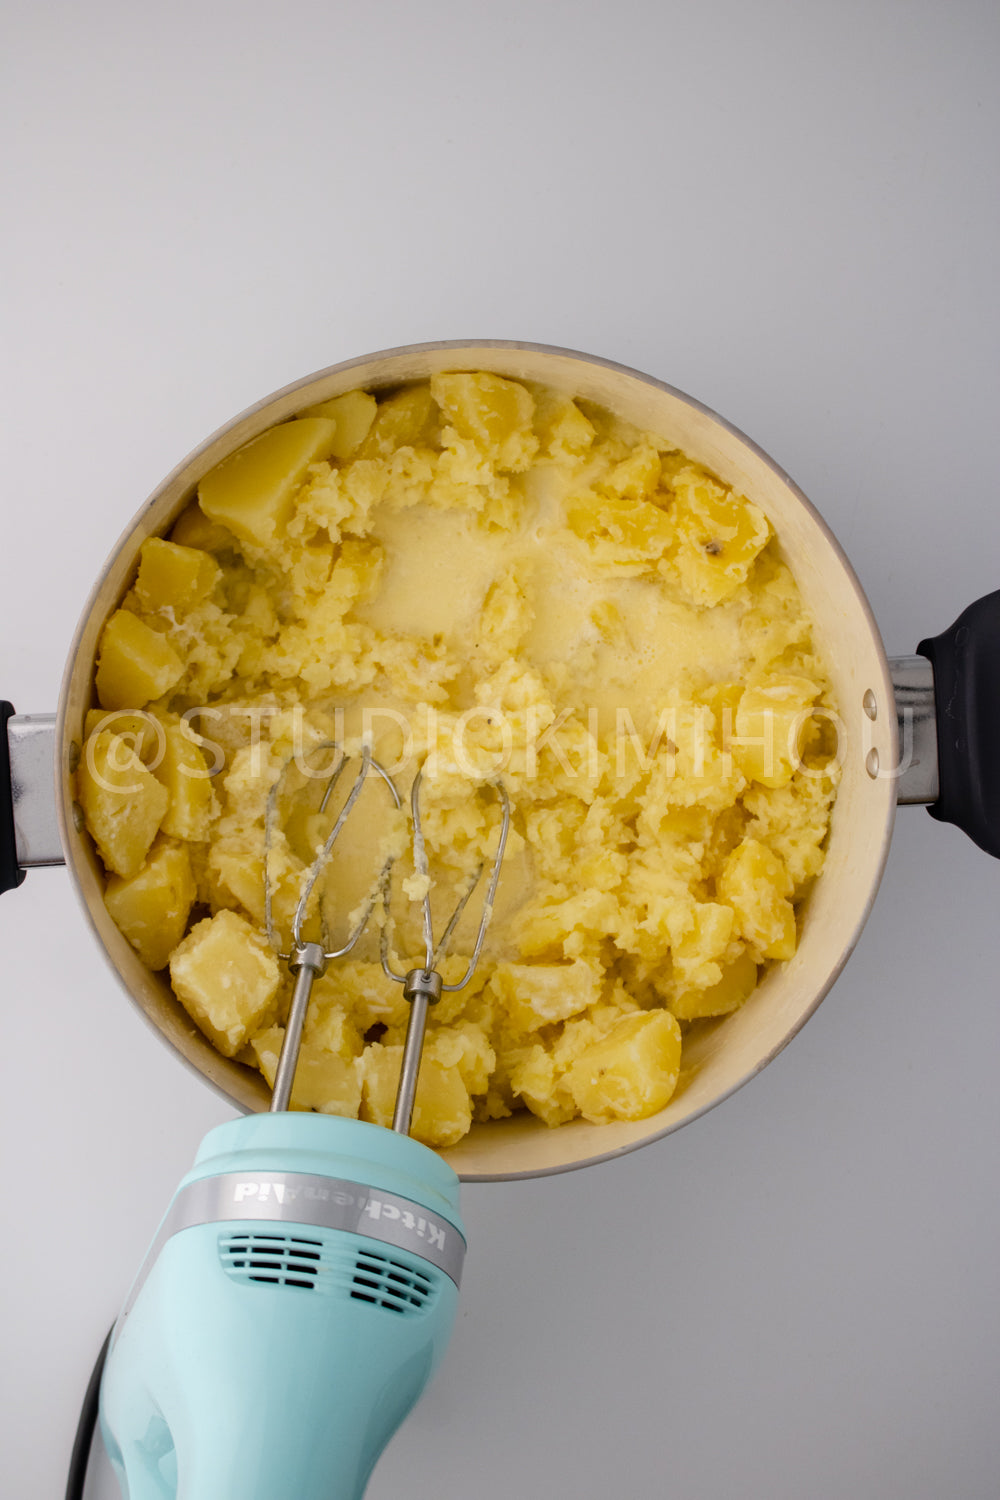 PLR - Garlic Mashed Potatoes